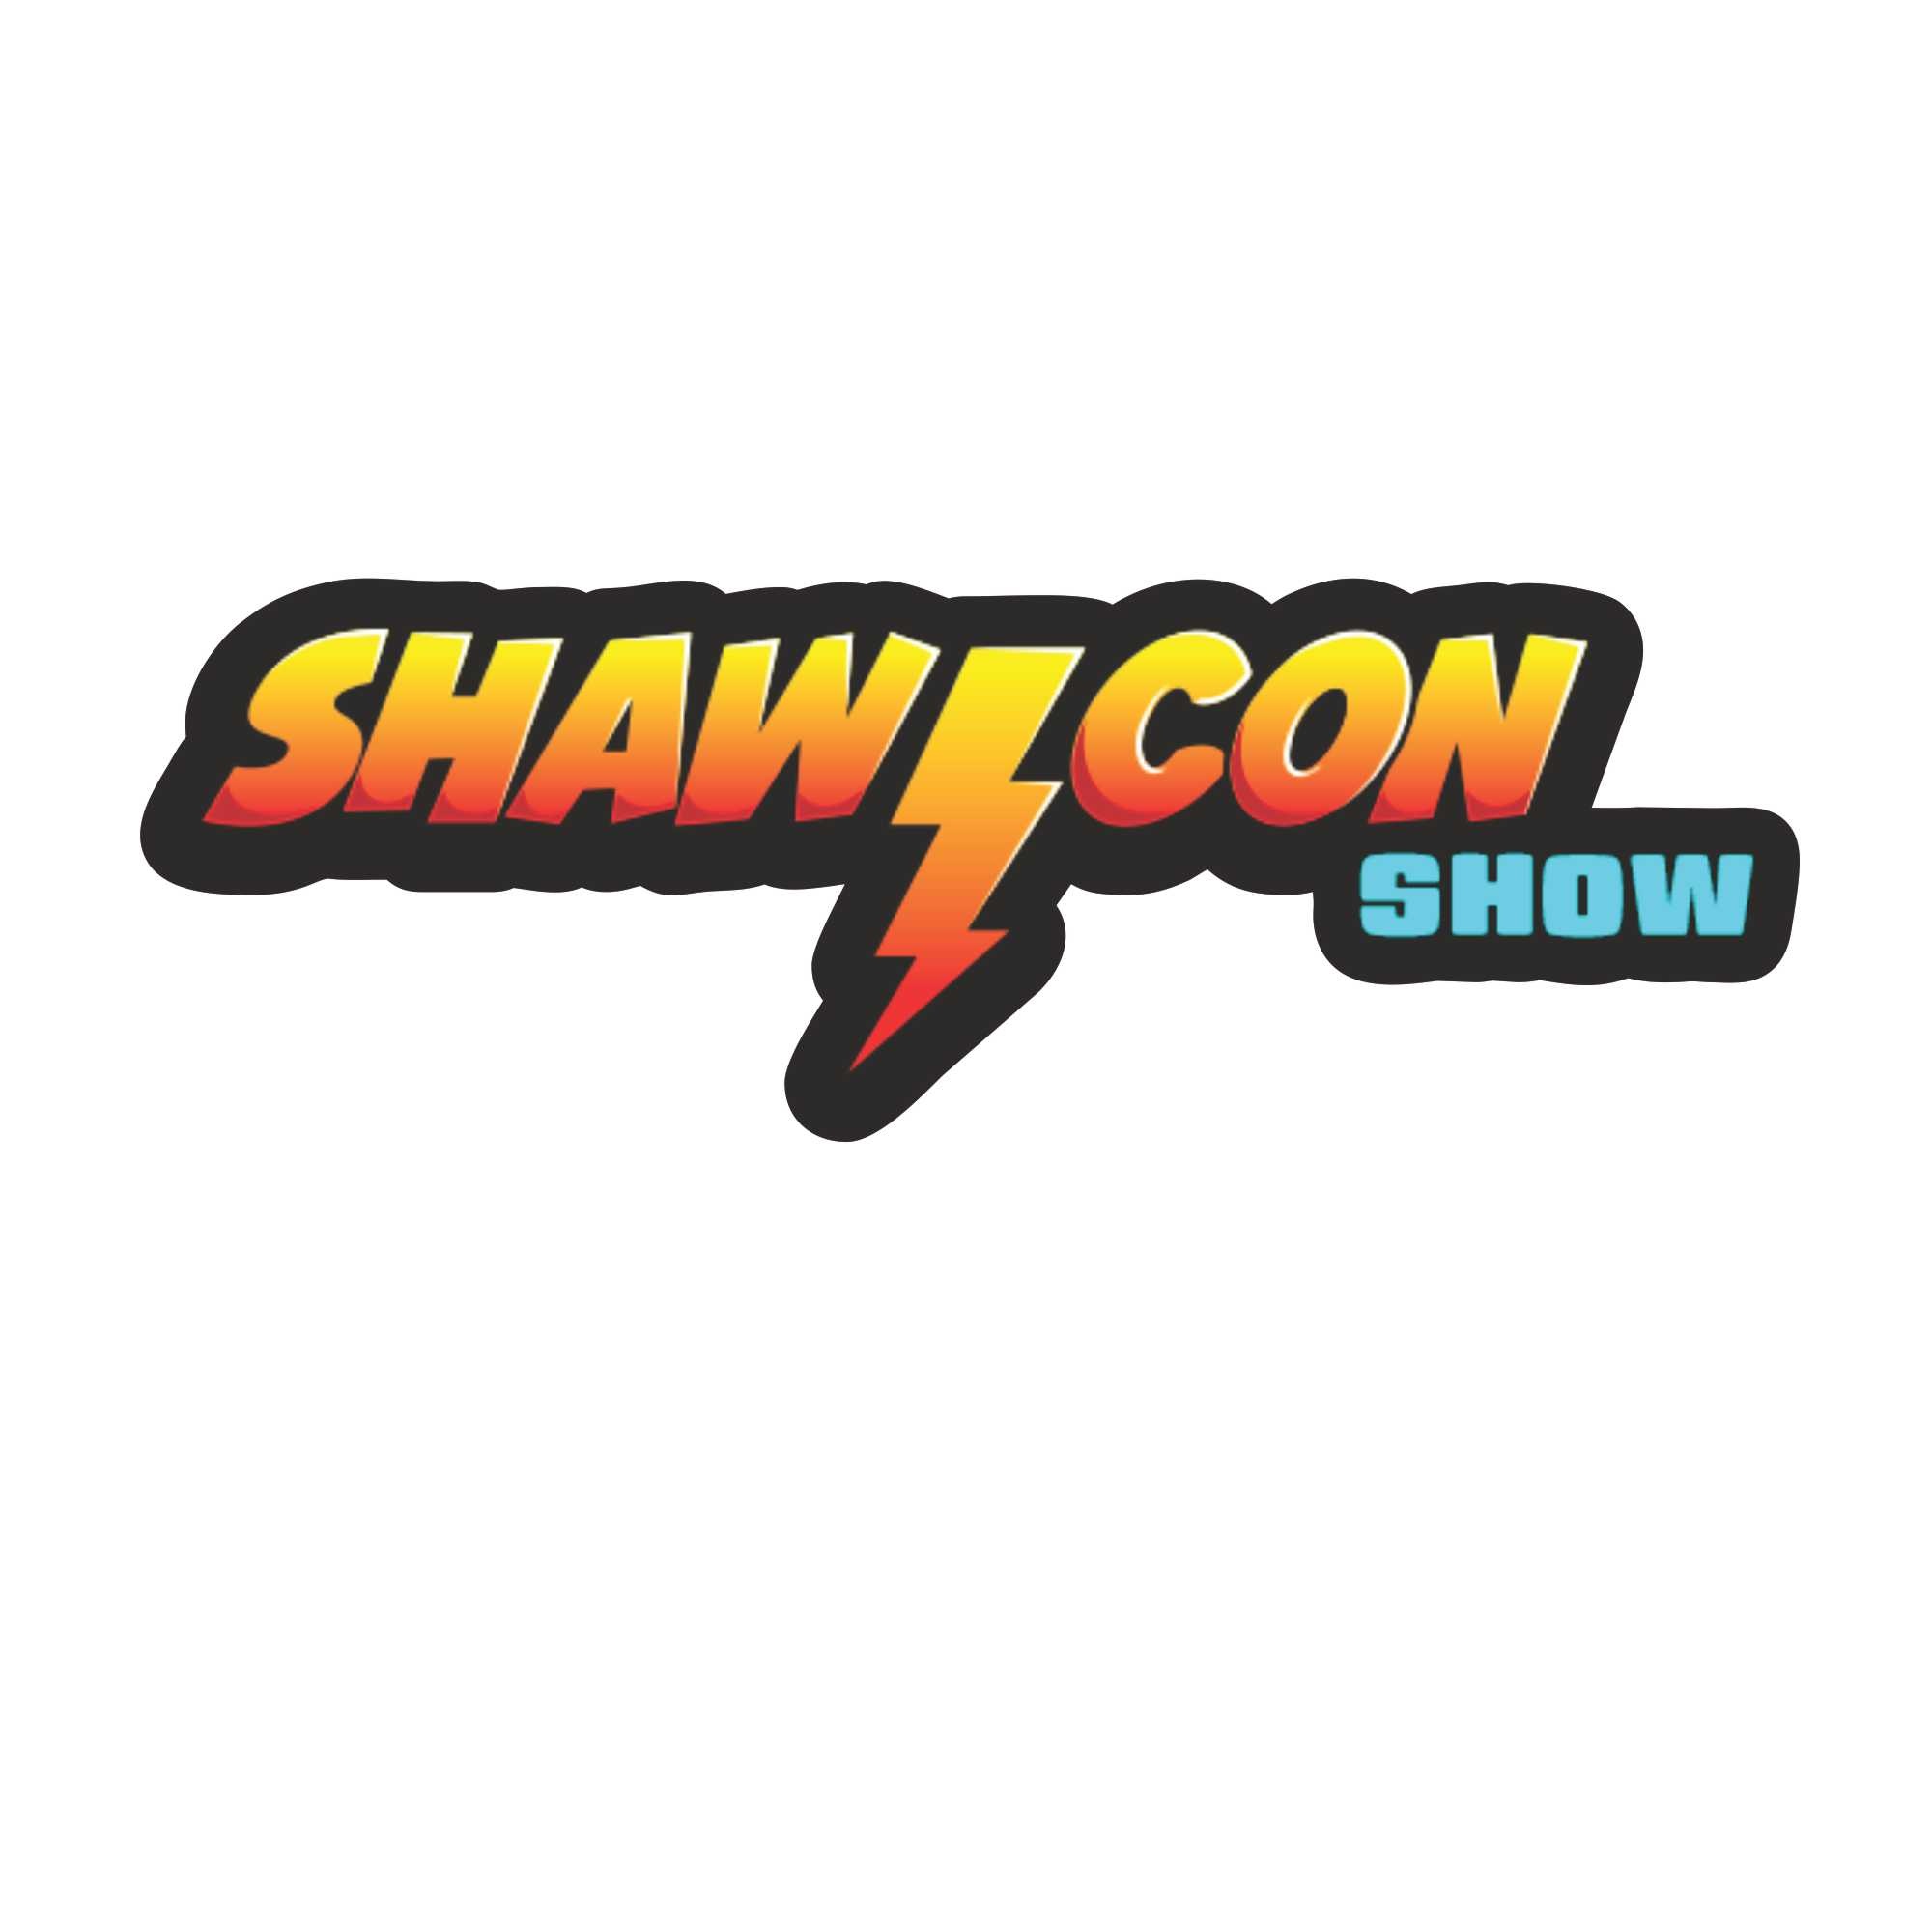 Shawicon Show - Logo texte